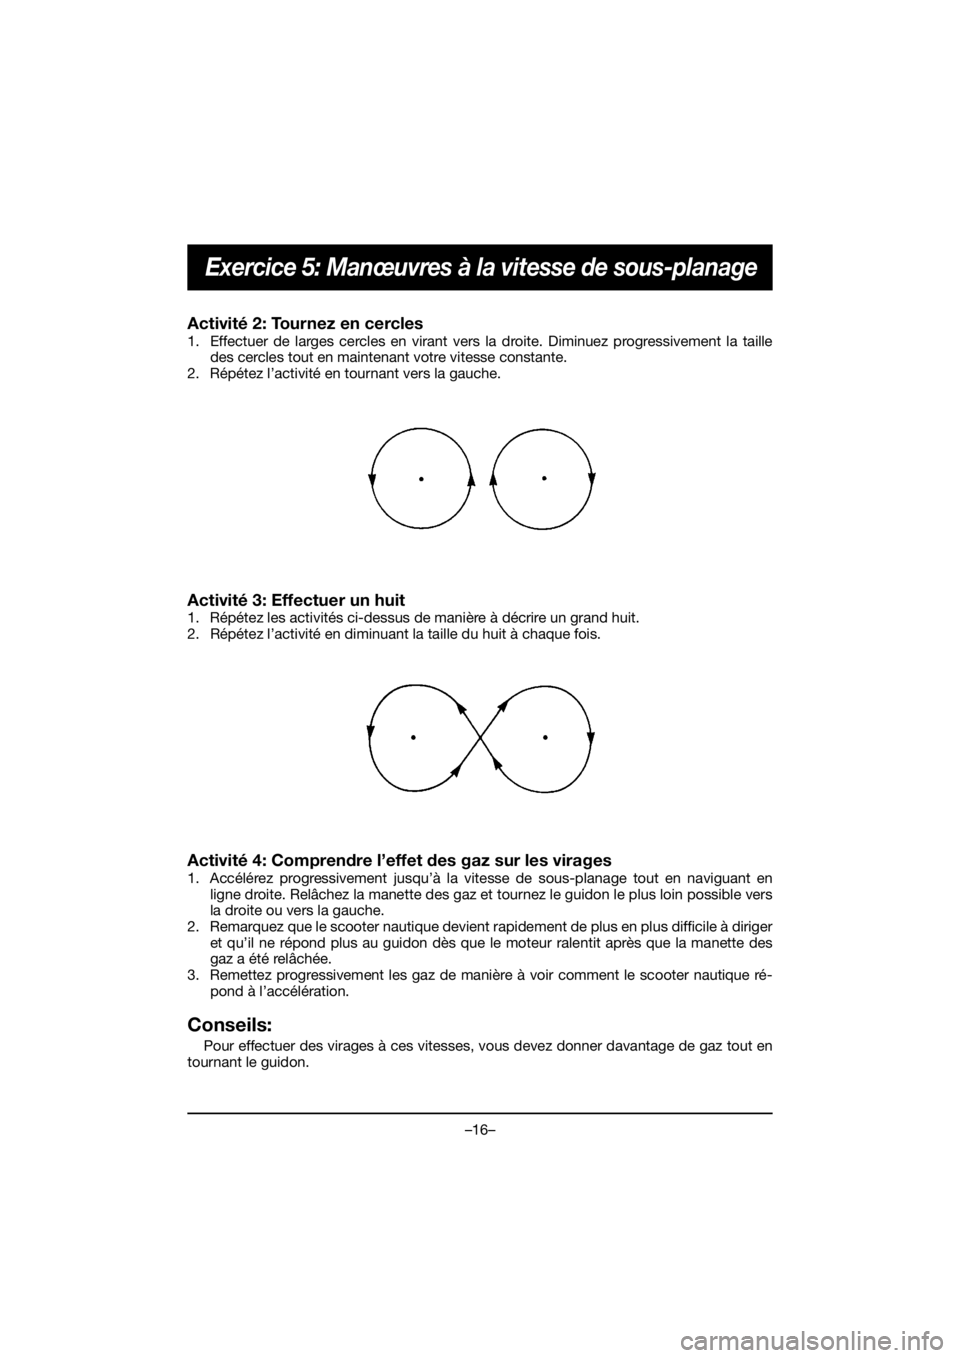 YAMAHA EX 2021  Manuale duso (in Italian) –16–
Exercice 5: Manœuvres à la vitesse de sous-planage
Activité 2: Tournez en cercles 
1. Effectuer de larges cercles en virant vers la droite. Diminuez progressivement la taille
des cercles t